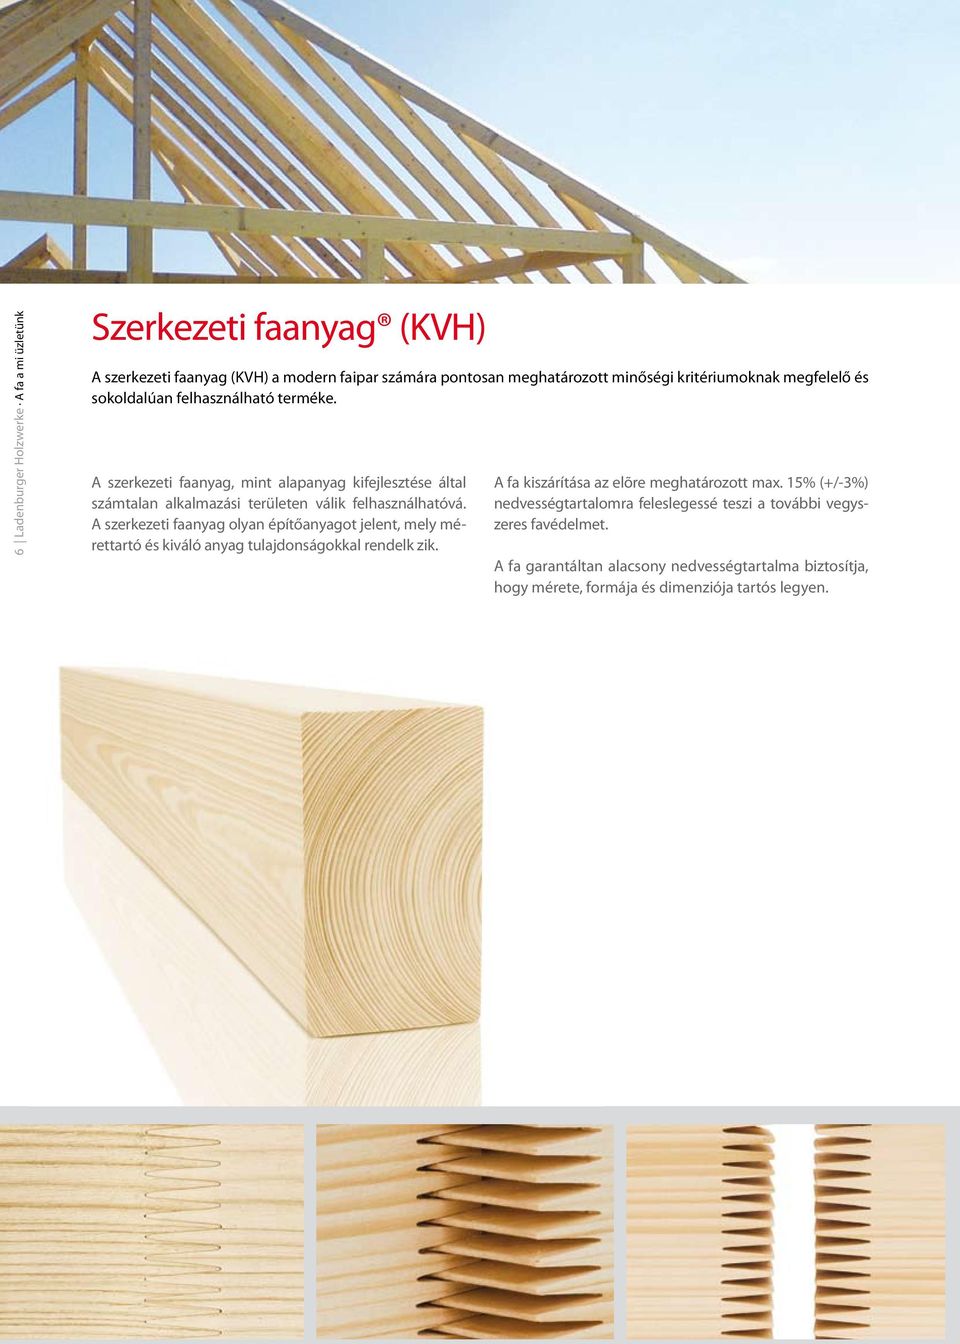 A szerkezeti faanyag olyan építőanyagot jelent, mely mérettartó és kiváló anyag tulajdonságokkal rendelk zik. A fa kiszárítása az elõre meghatározott max.